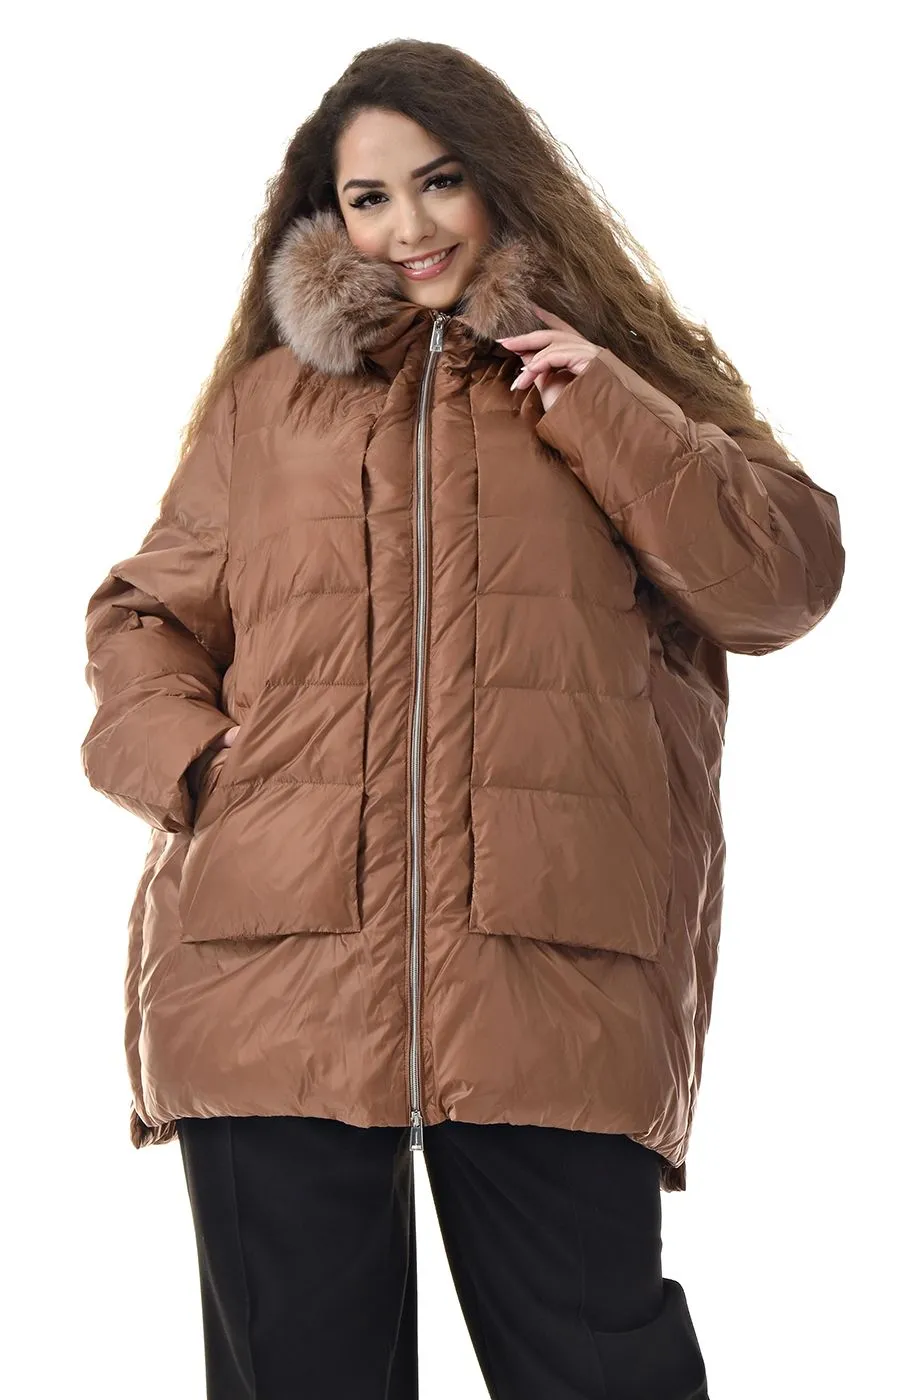 Куртка пуховик карамельного цвета с капюшоном большого размера